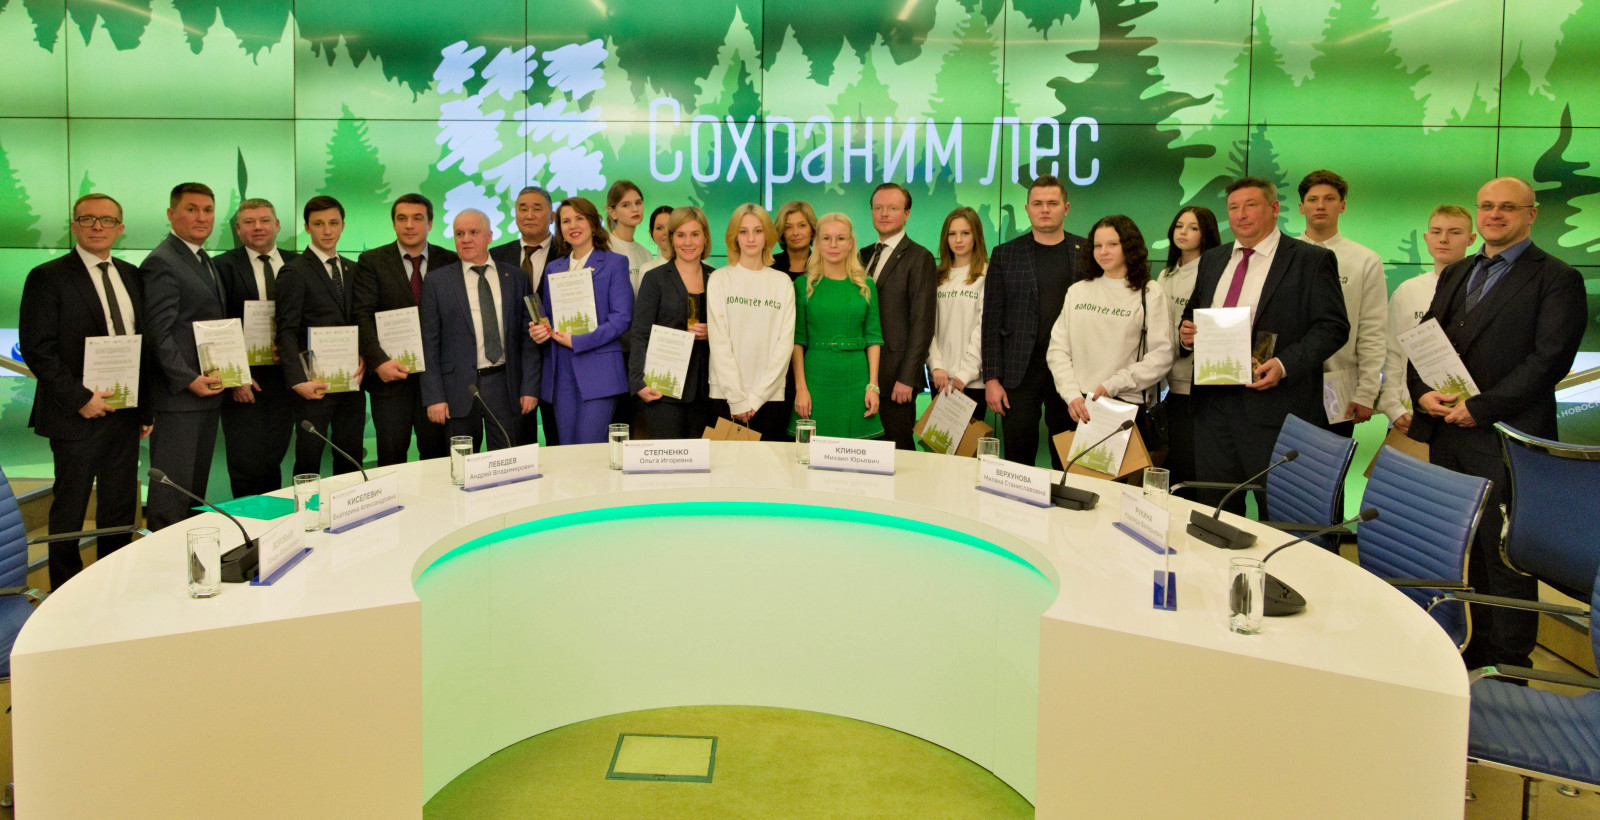 Нижегородская область заняла второе место по итогам Всероссийской акции «Сохраним лес»